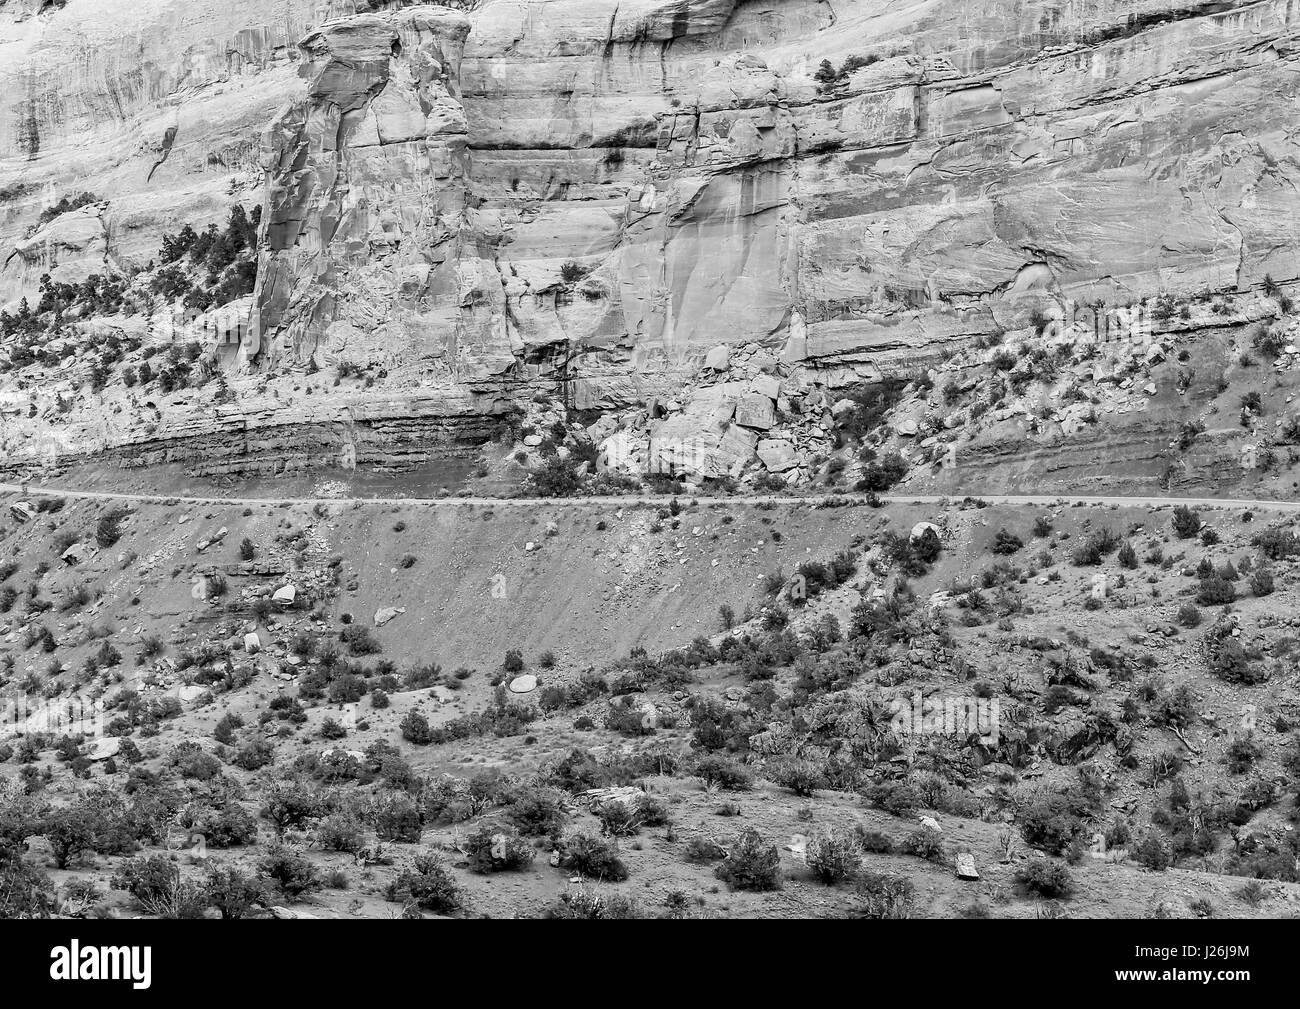 Bestandteil der Rim Rock Drive, die Straße, die durch das Colorado National Monument, vor einer Klippe. Das Bild ist in Monochrom. Stockfoto